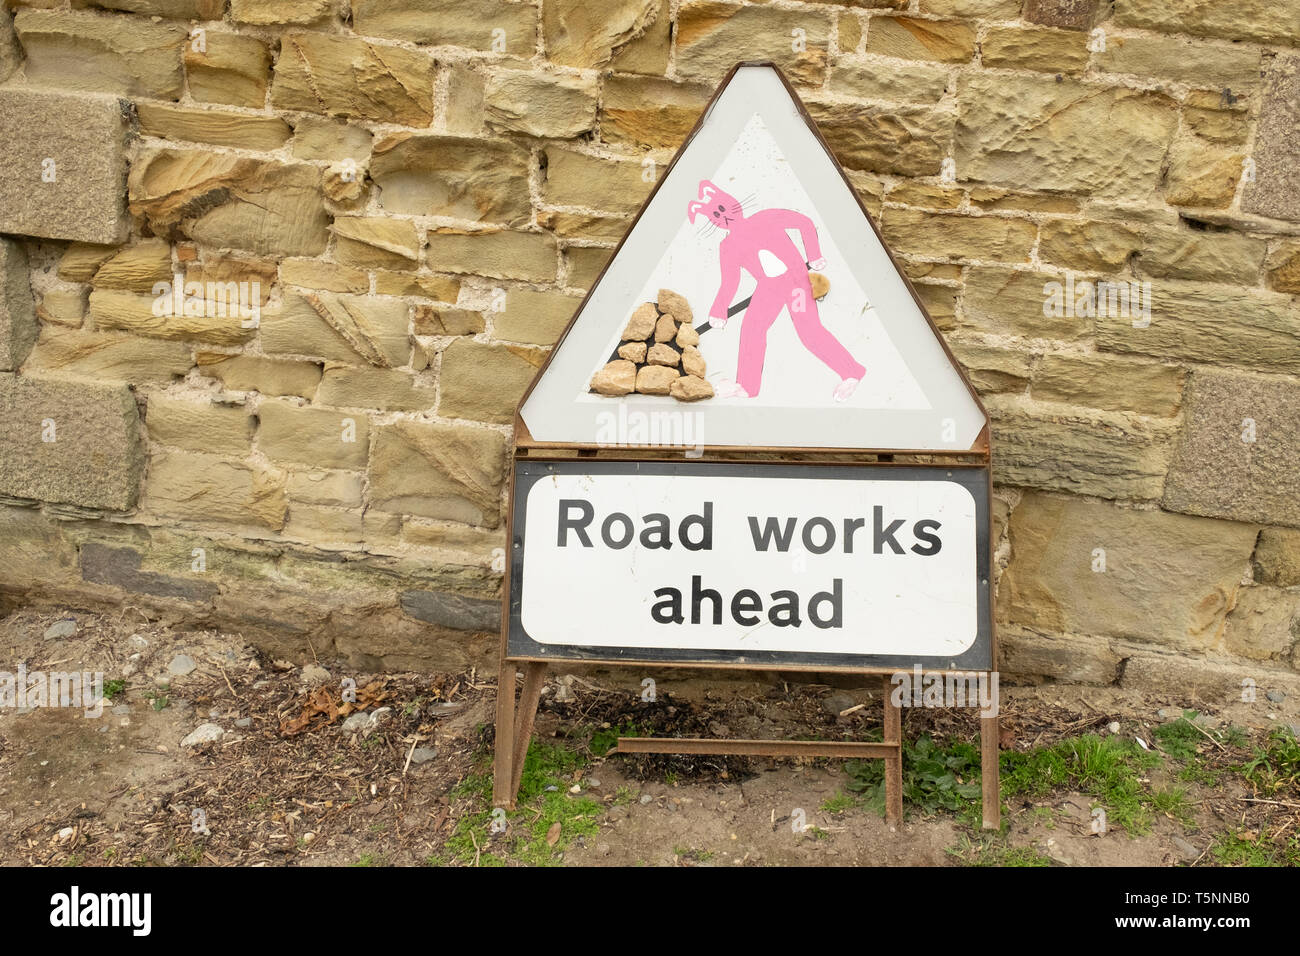 Travaux routiers modifiés signe avec lapin rose figure, à Cornwall, Angleterre Banque D'Images